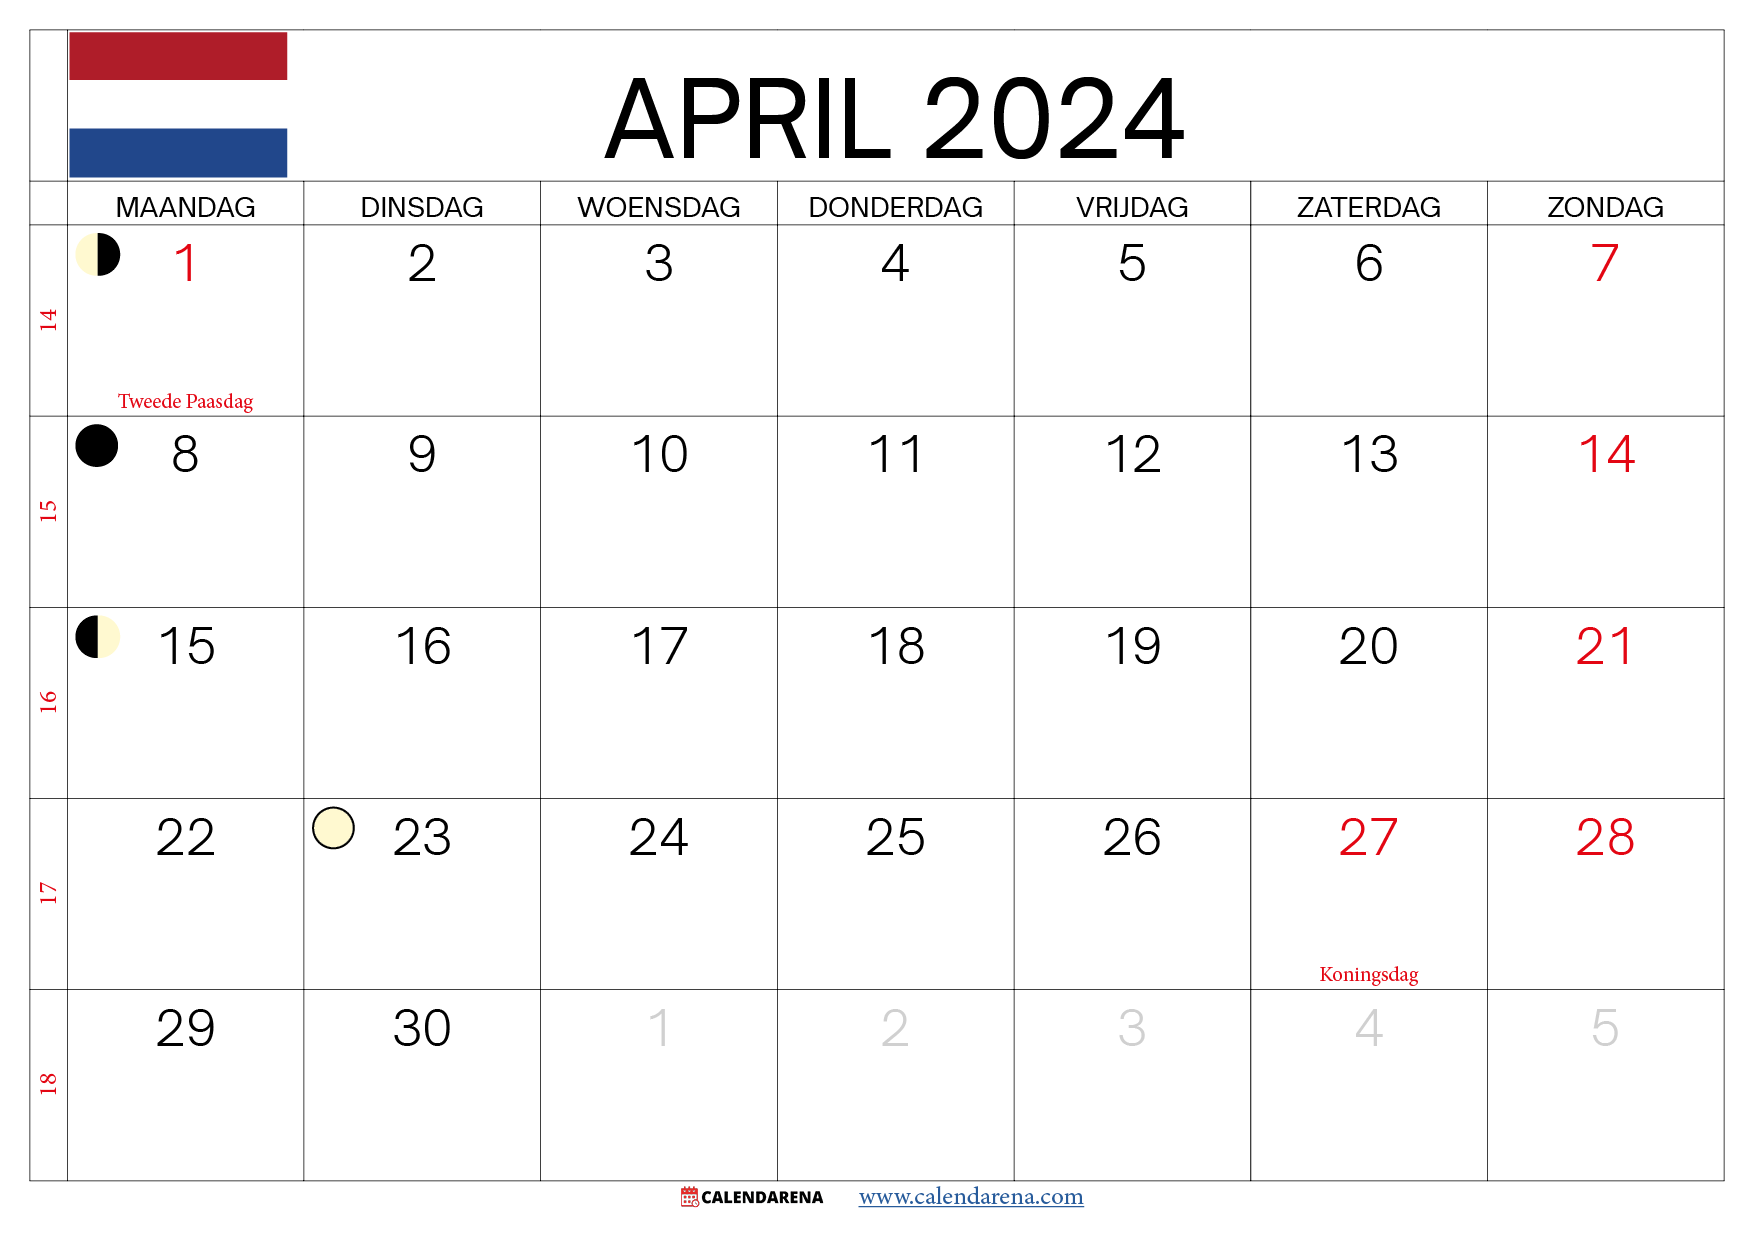 maand april 2024 nederland